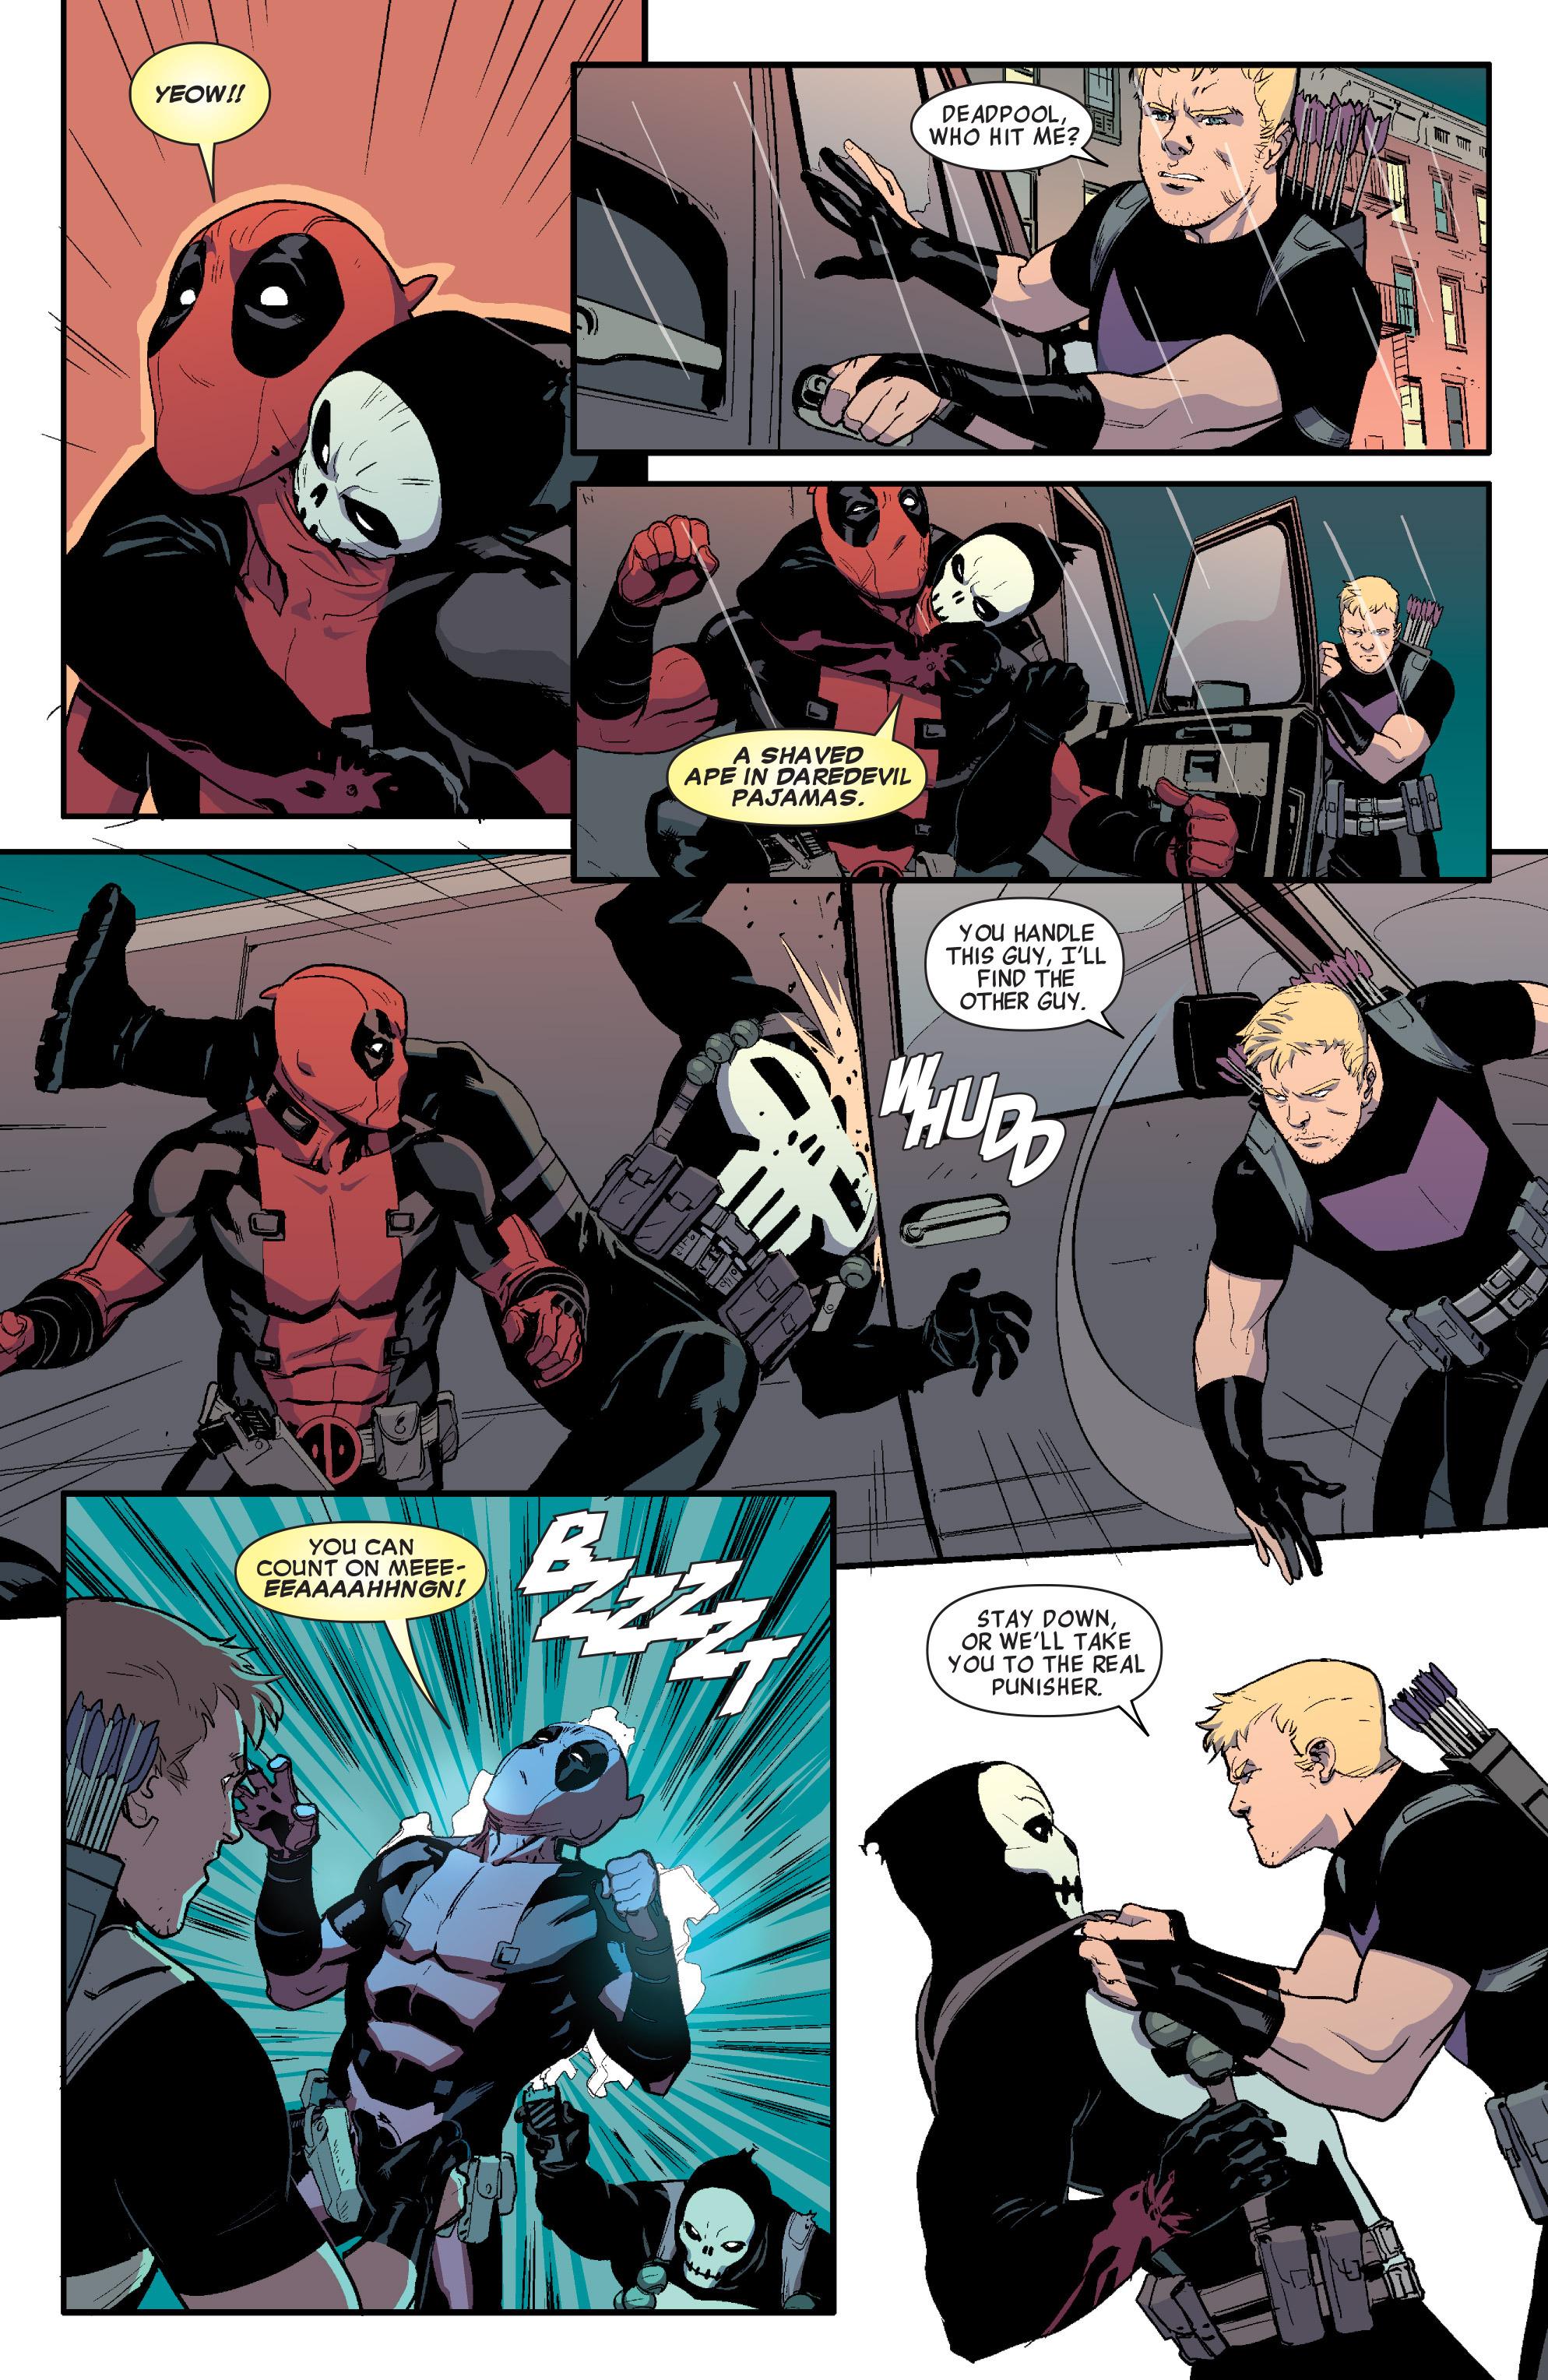 Hawkeye vs. Deadpool review